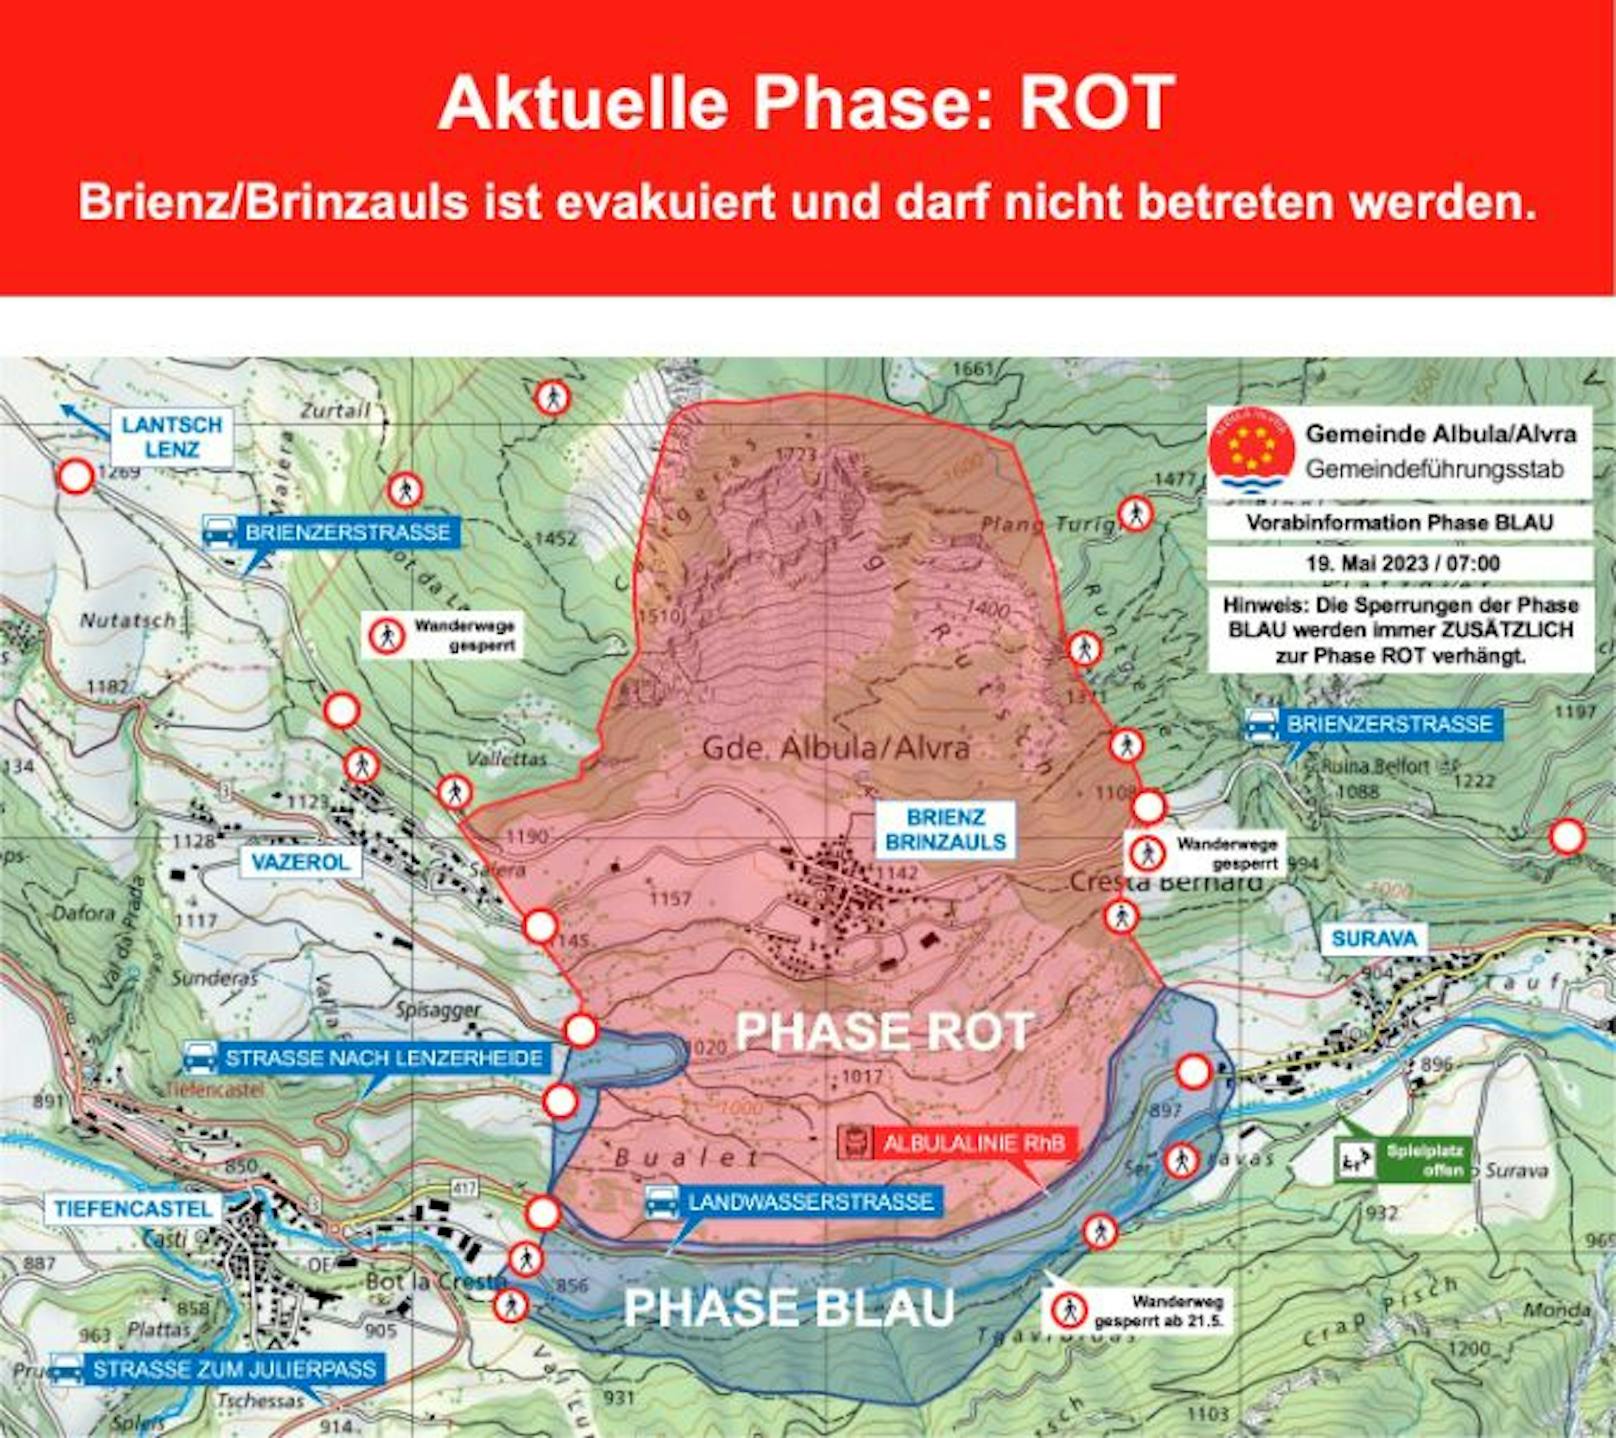 "Phase Rot" in Brienz: der Ort ist evakuiert und zur Sperrzone (rot) gemacht worden.